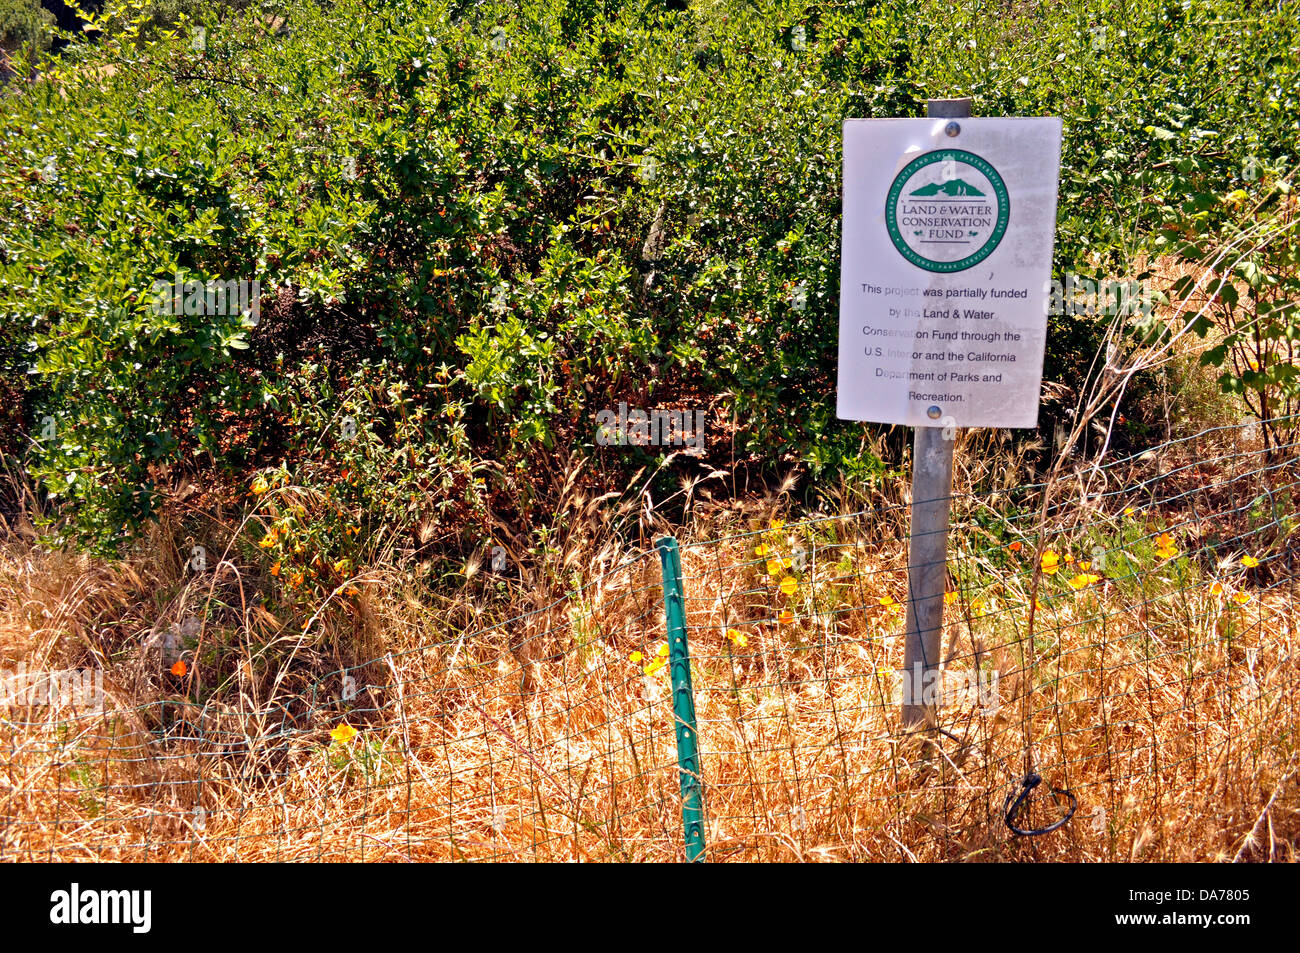 Fondo de Conservación de tierra y agua del proyecto sign en McLaren Park, San Francisco, California, EE.UU. Foto de stock